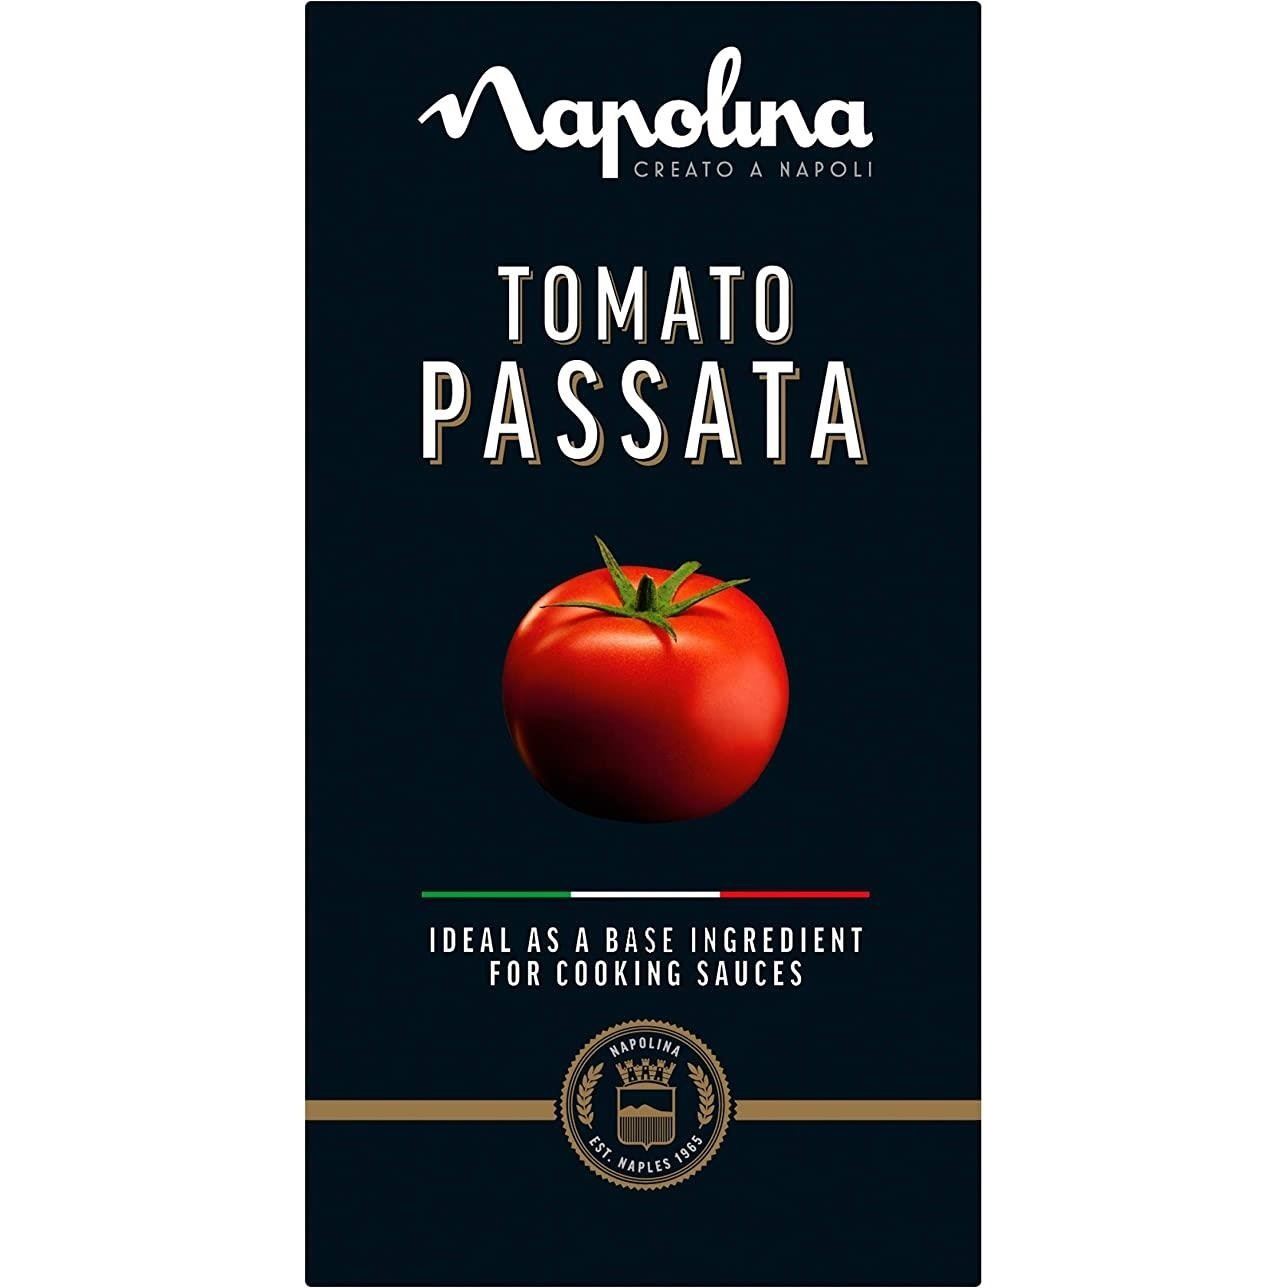 Napolina Tomato Passata Carton 500g